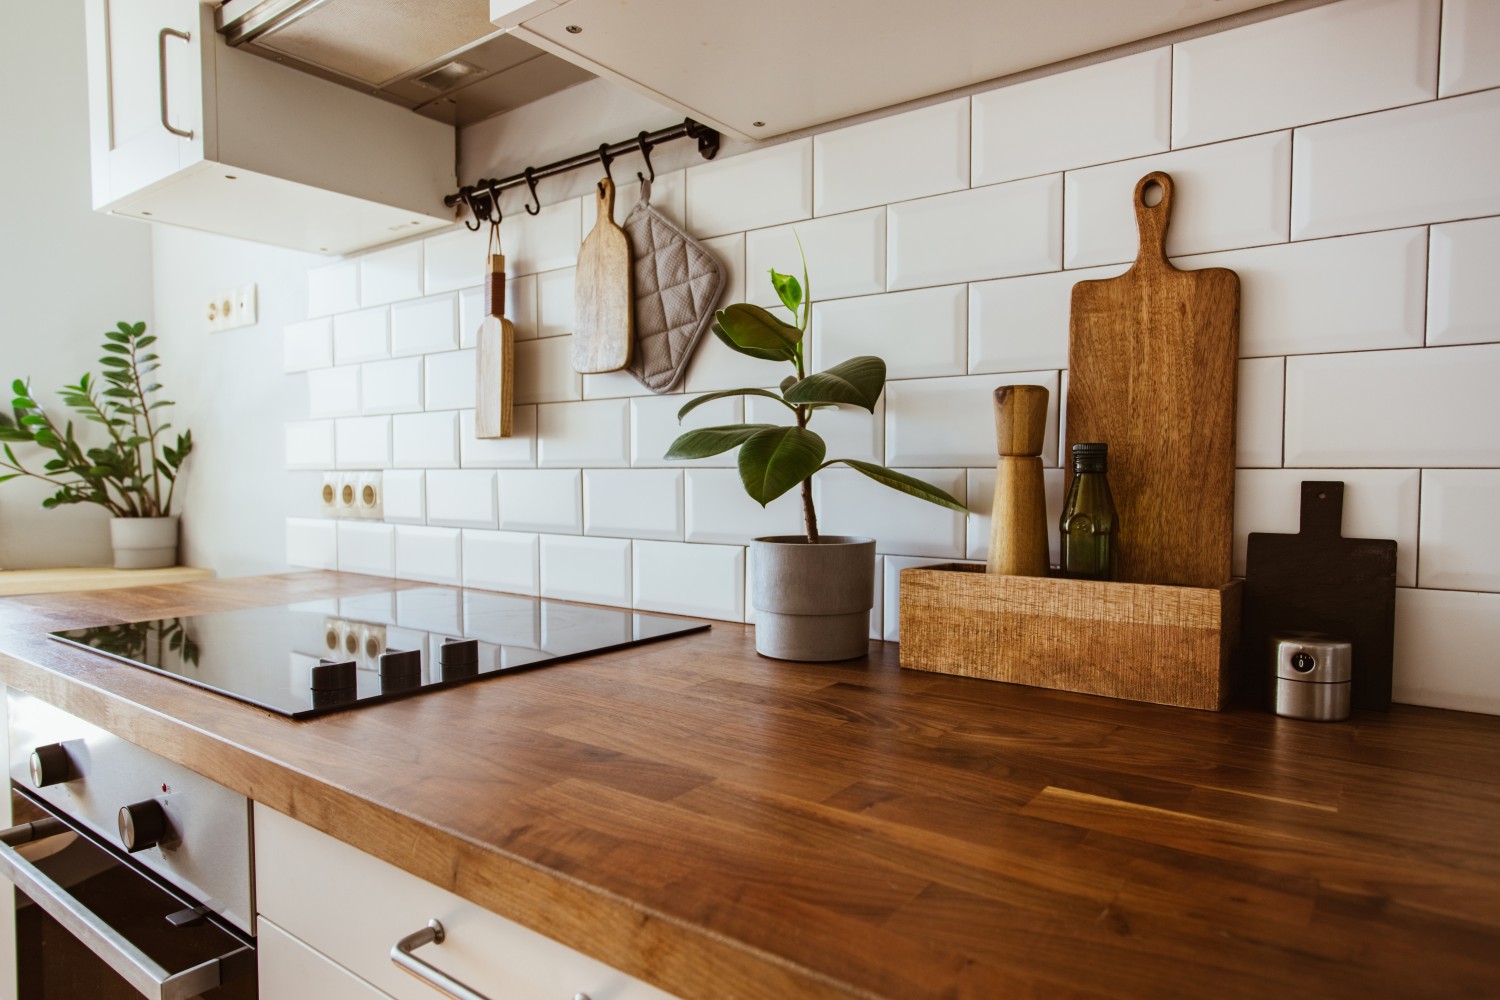 Kitchen brass utensils, chef accessories. Hanging kitchen with white backsplash tiles chicago